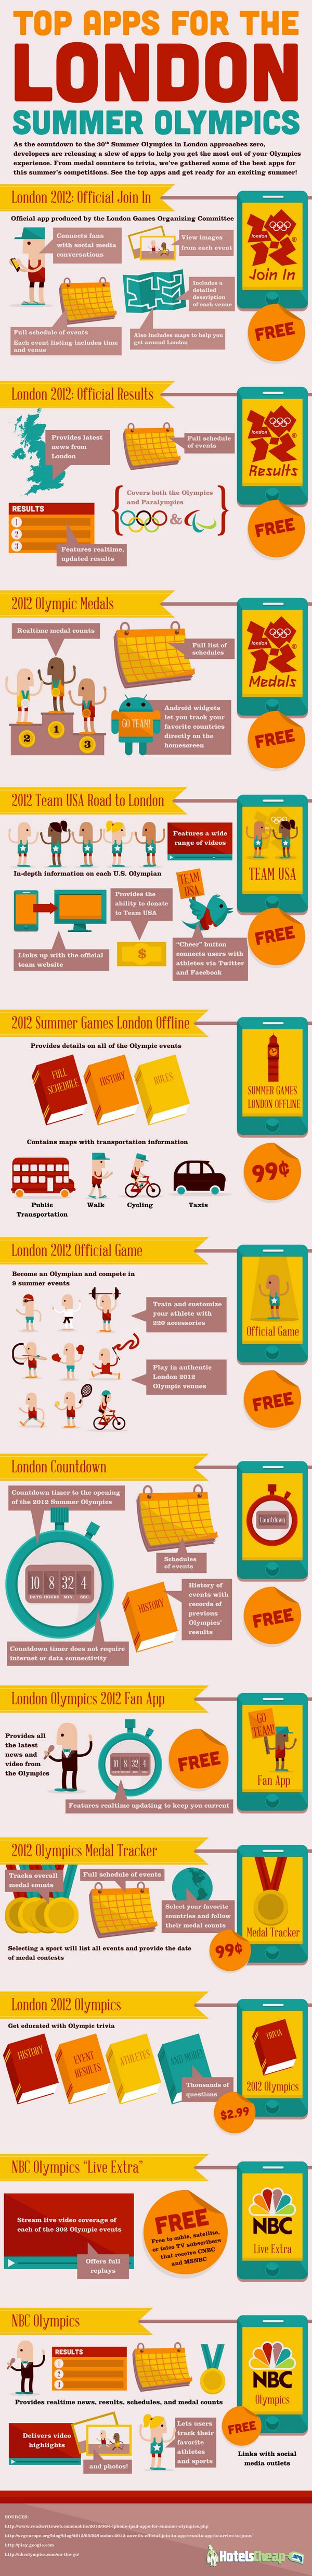 Aplicaciones móviles para seguir de cerca los Juegos Olímpicos de Londres 2012 1